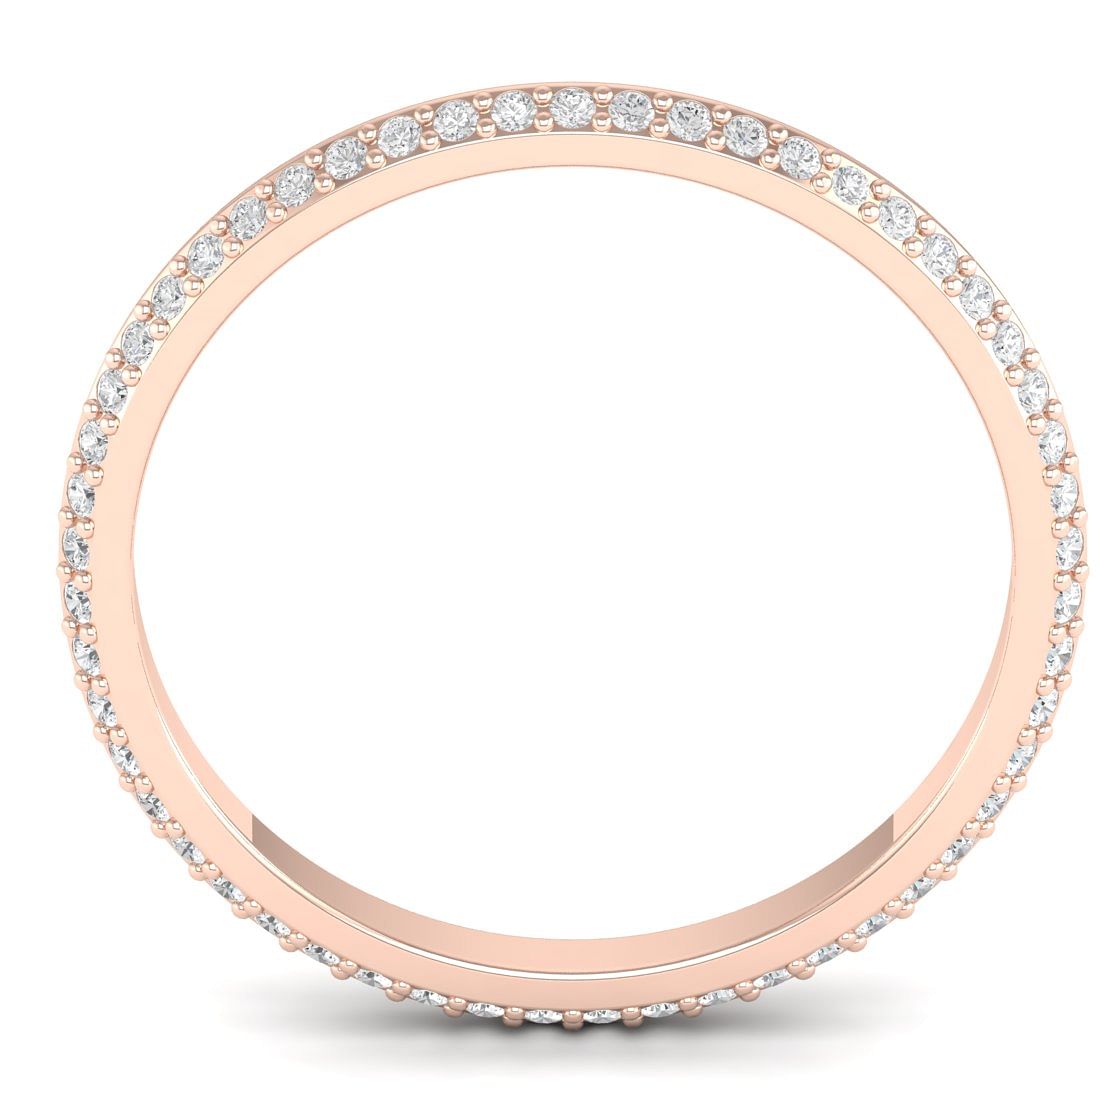 Dayita Rose Gold Diamond Ring For Women